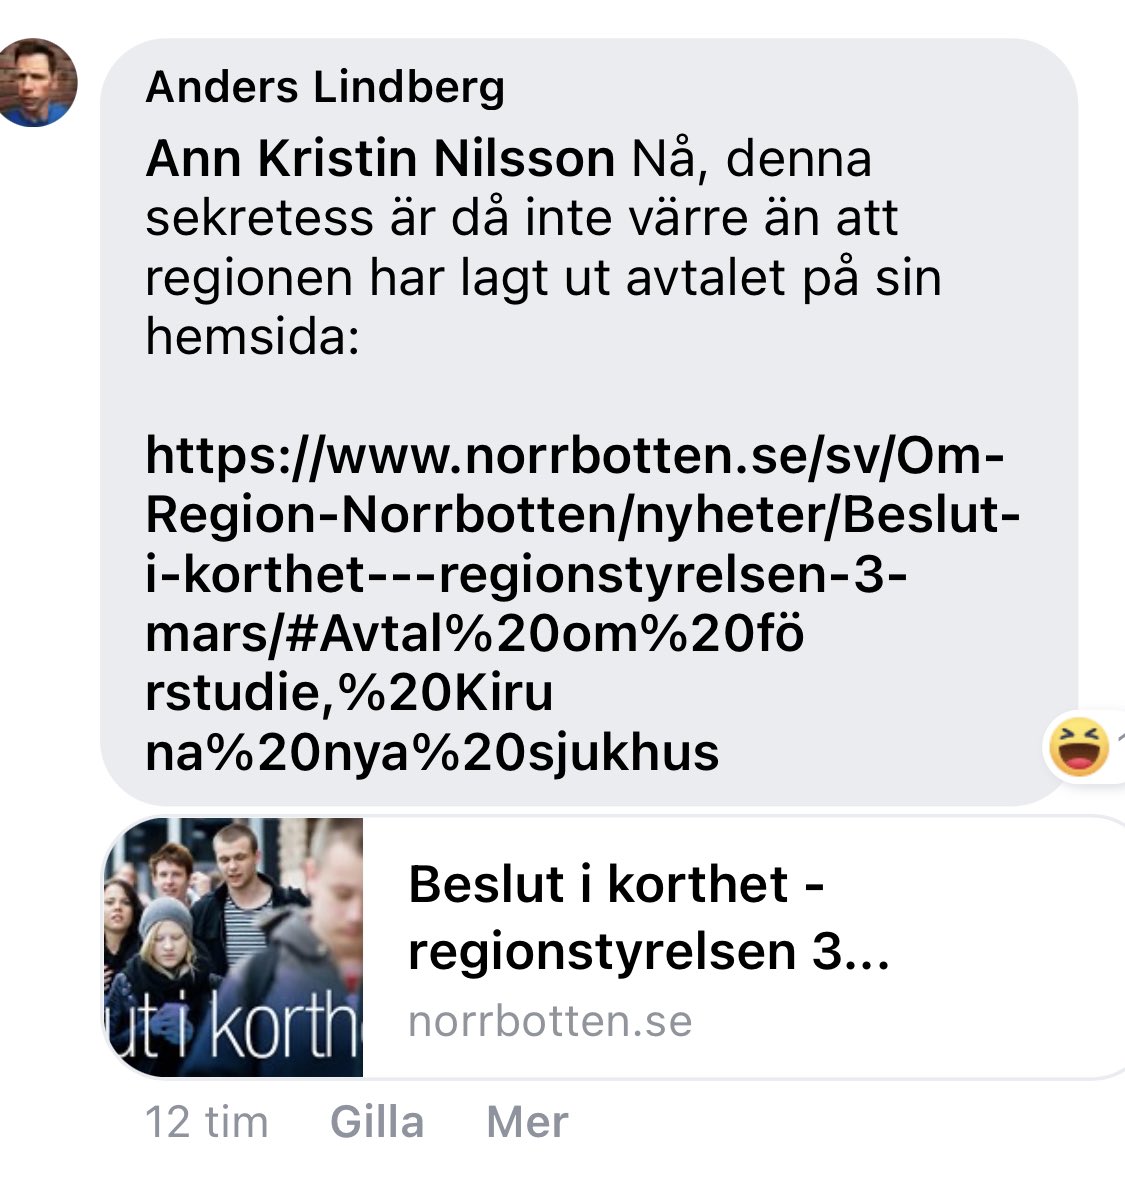 Fick meddelande att Anders Lindberg har skrivit på facebook att  Regionnorrbotten visar avtalet om förstudien om inlösen av kiruna sjukhus. Då kanske LKAB kan släppa sekretessen på avtalet så slipper alla spekulera vad som står i avtalet.